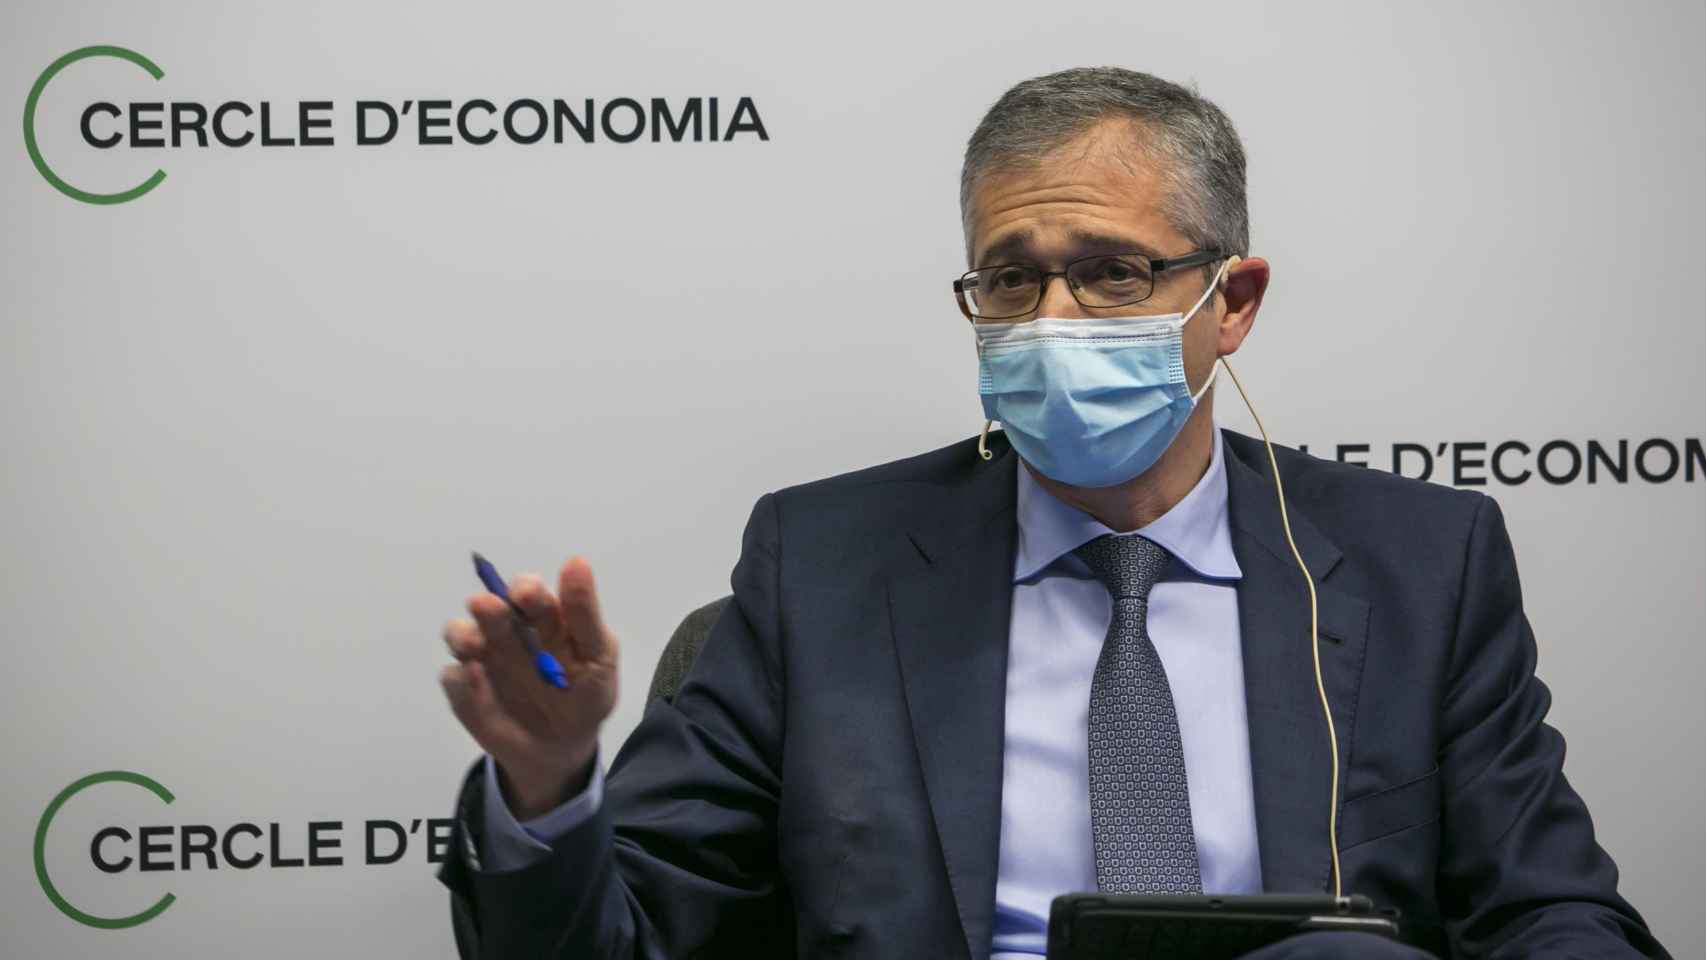 El gobernador del Banco de España, Pablo Hernández de Cos, en el Círculo de Economía / CdE